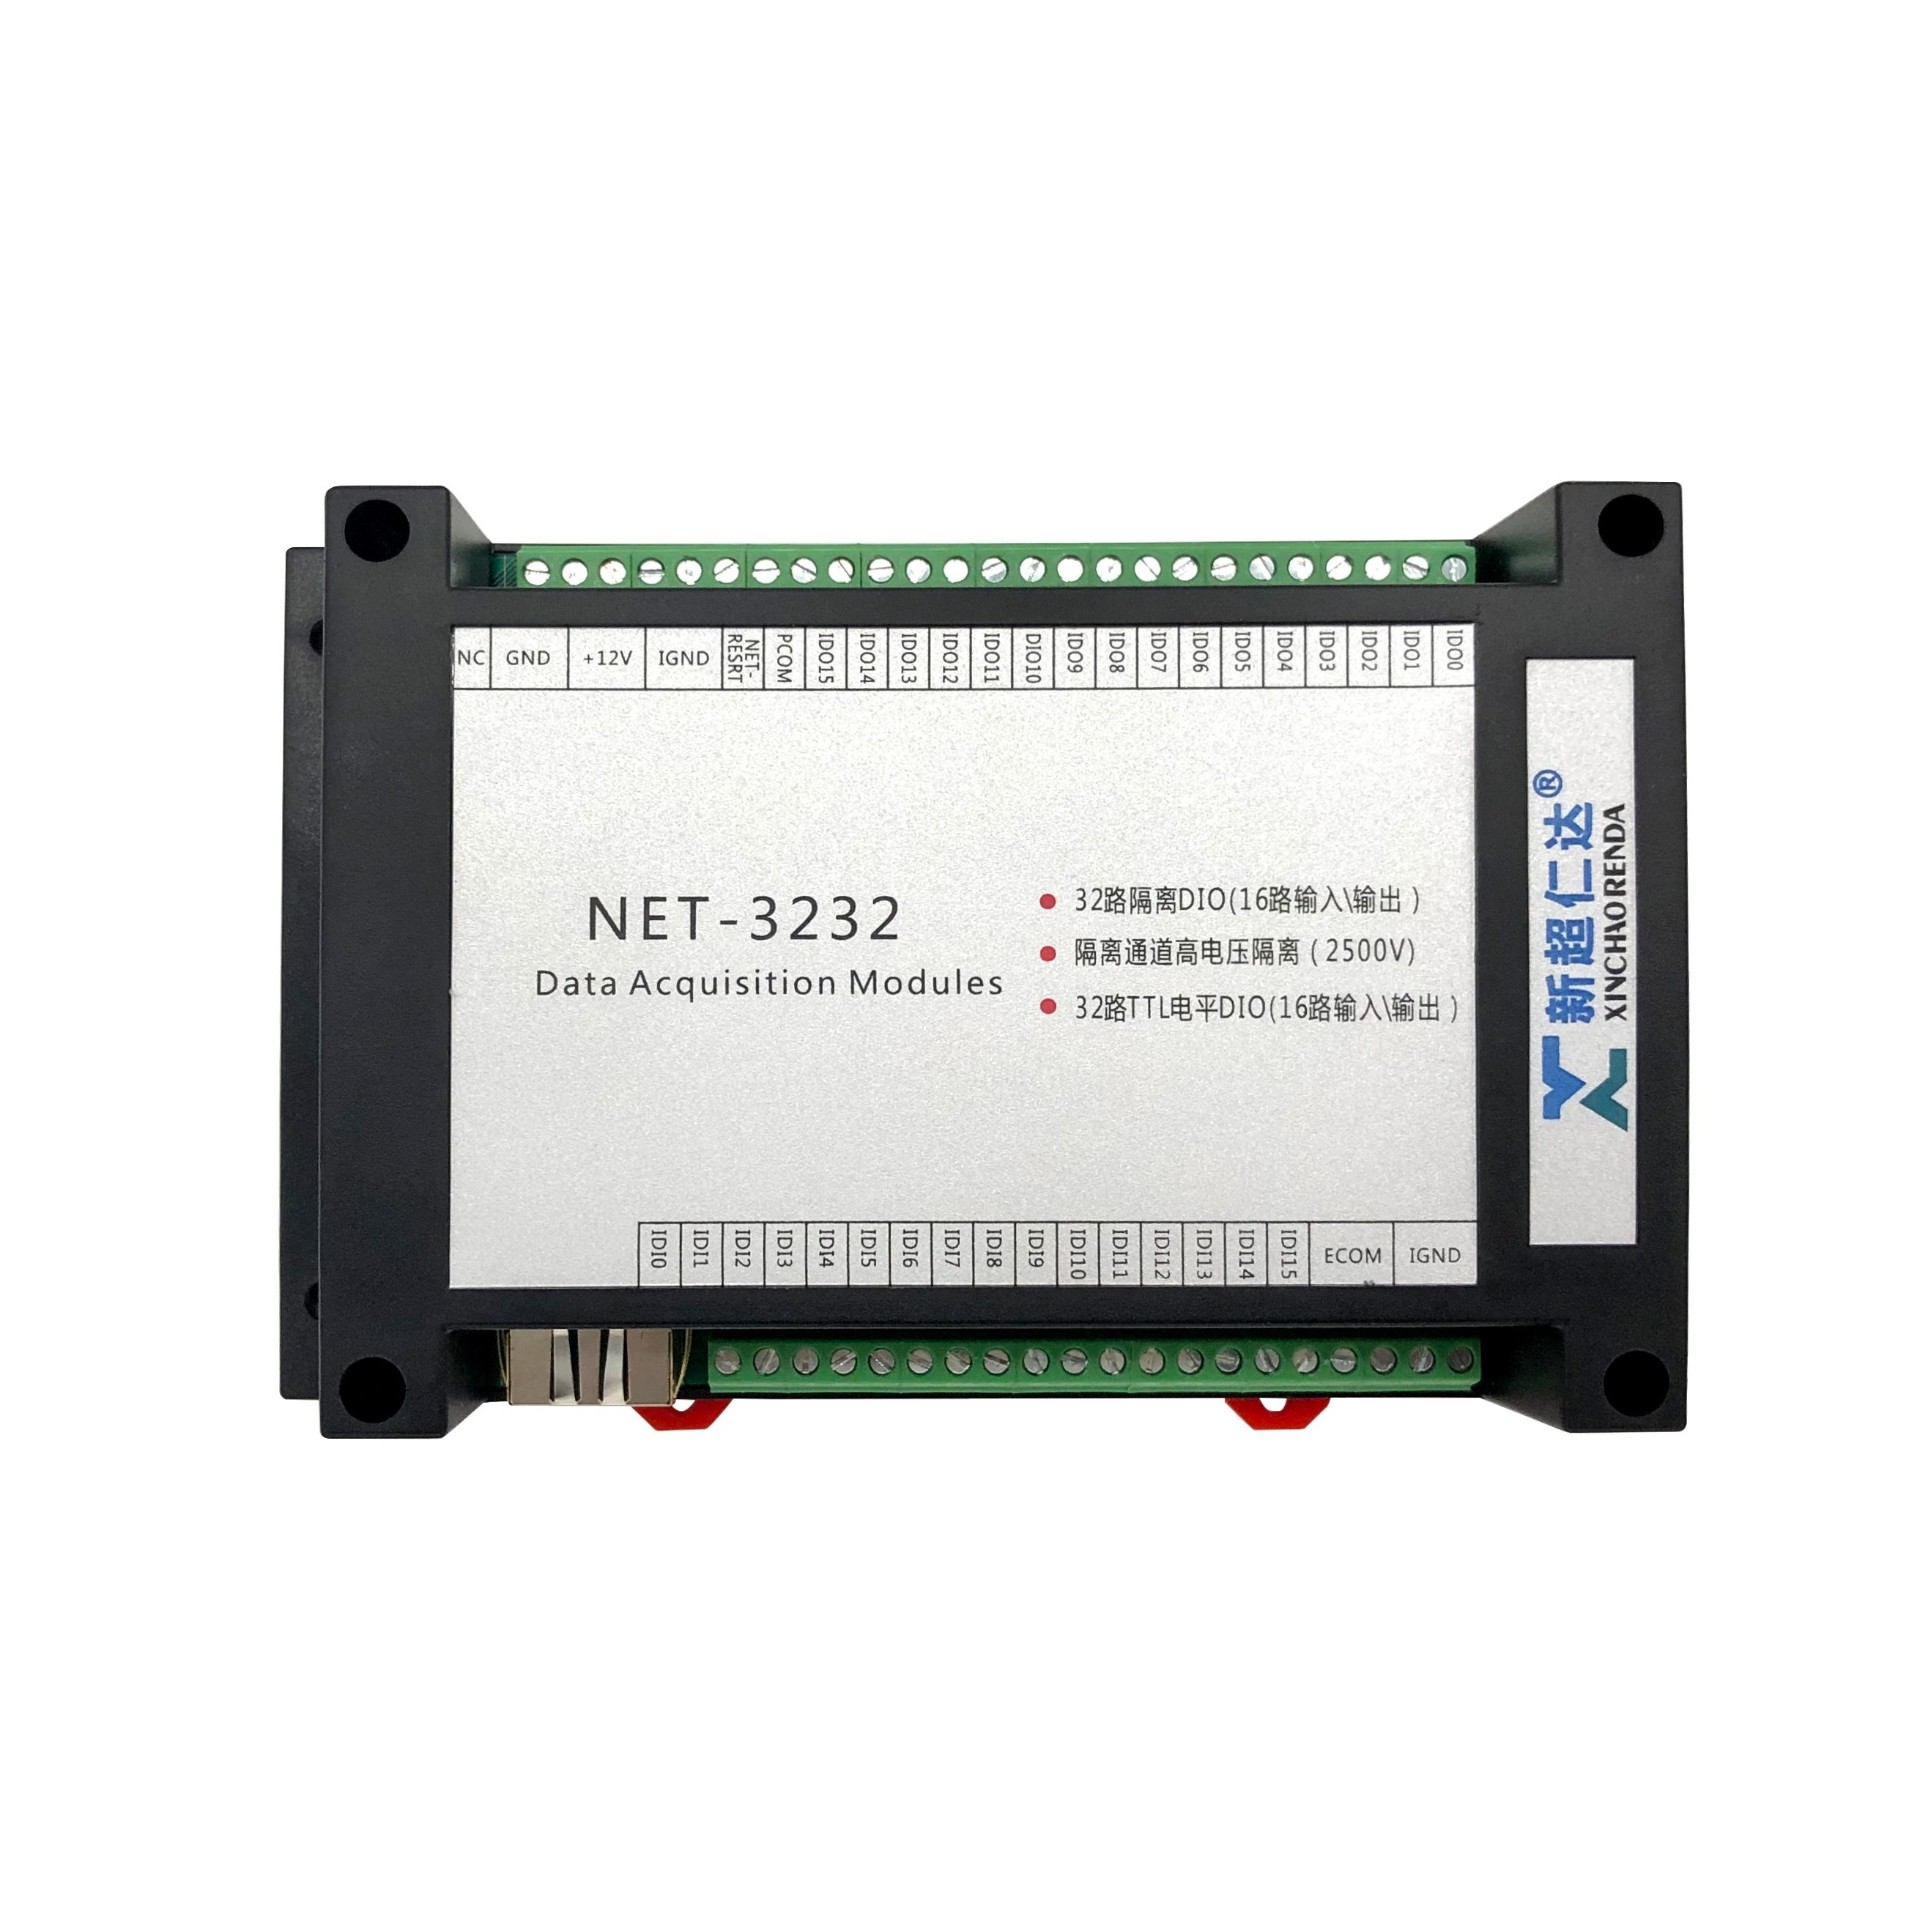 NET-3232